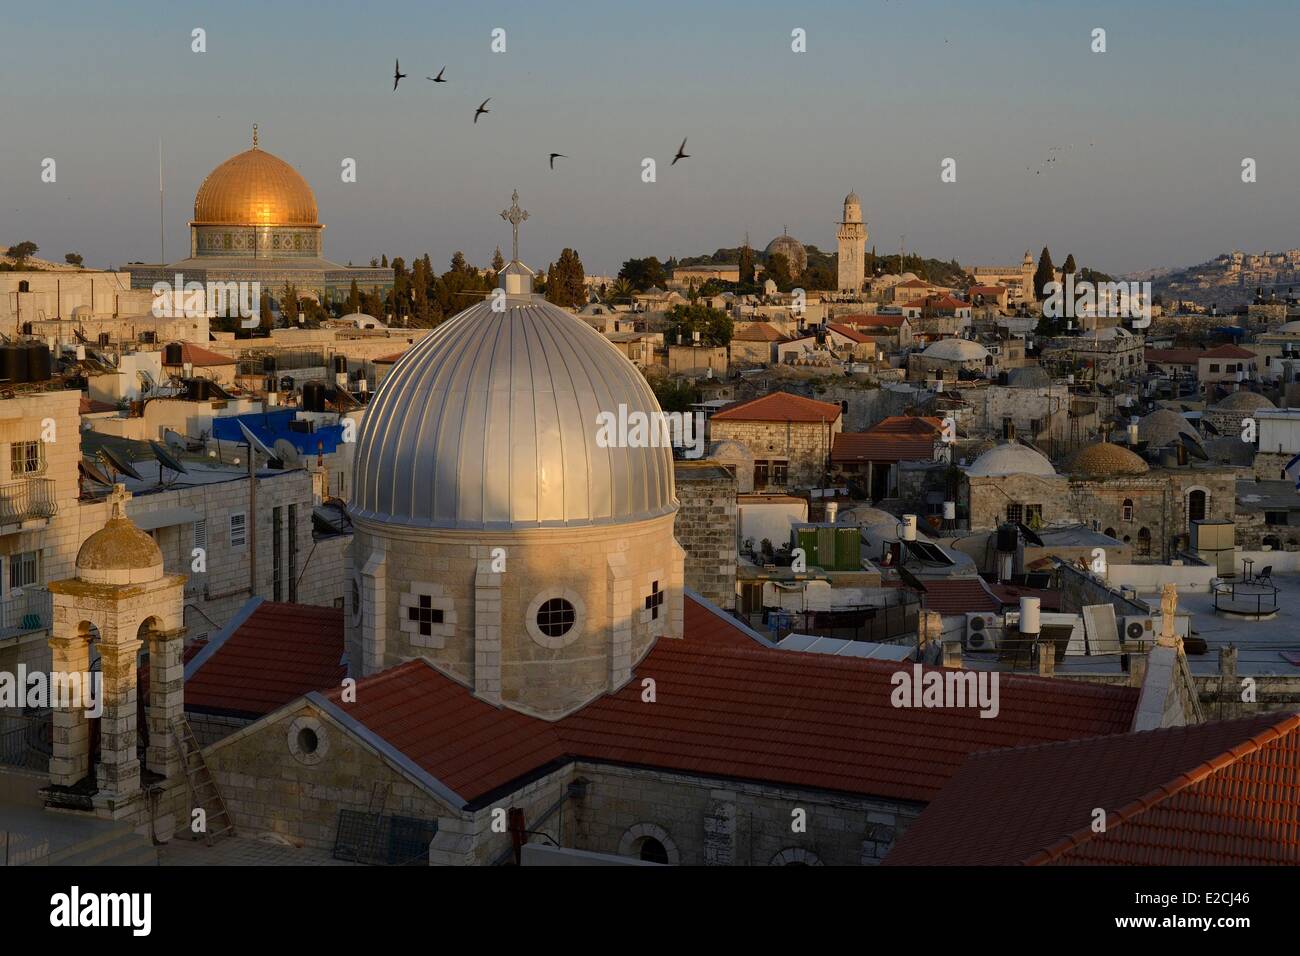 Israele, Gerusalemme, città santa e la città vecchia sono classificati come patrimonio mondiale dall'UNESCO, i tetti del quartiere musulmano, la chiesa di Nostra Signora di lo spasmo e la Cupola della roccia in background Foto Stock